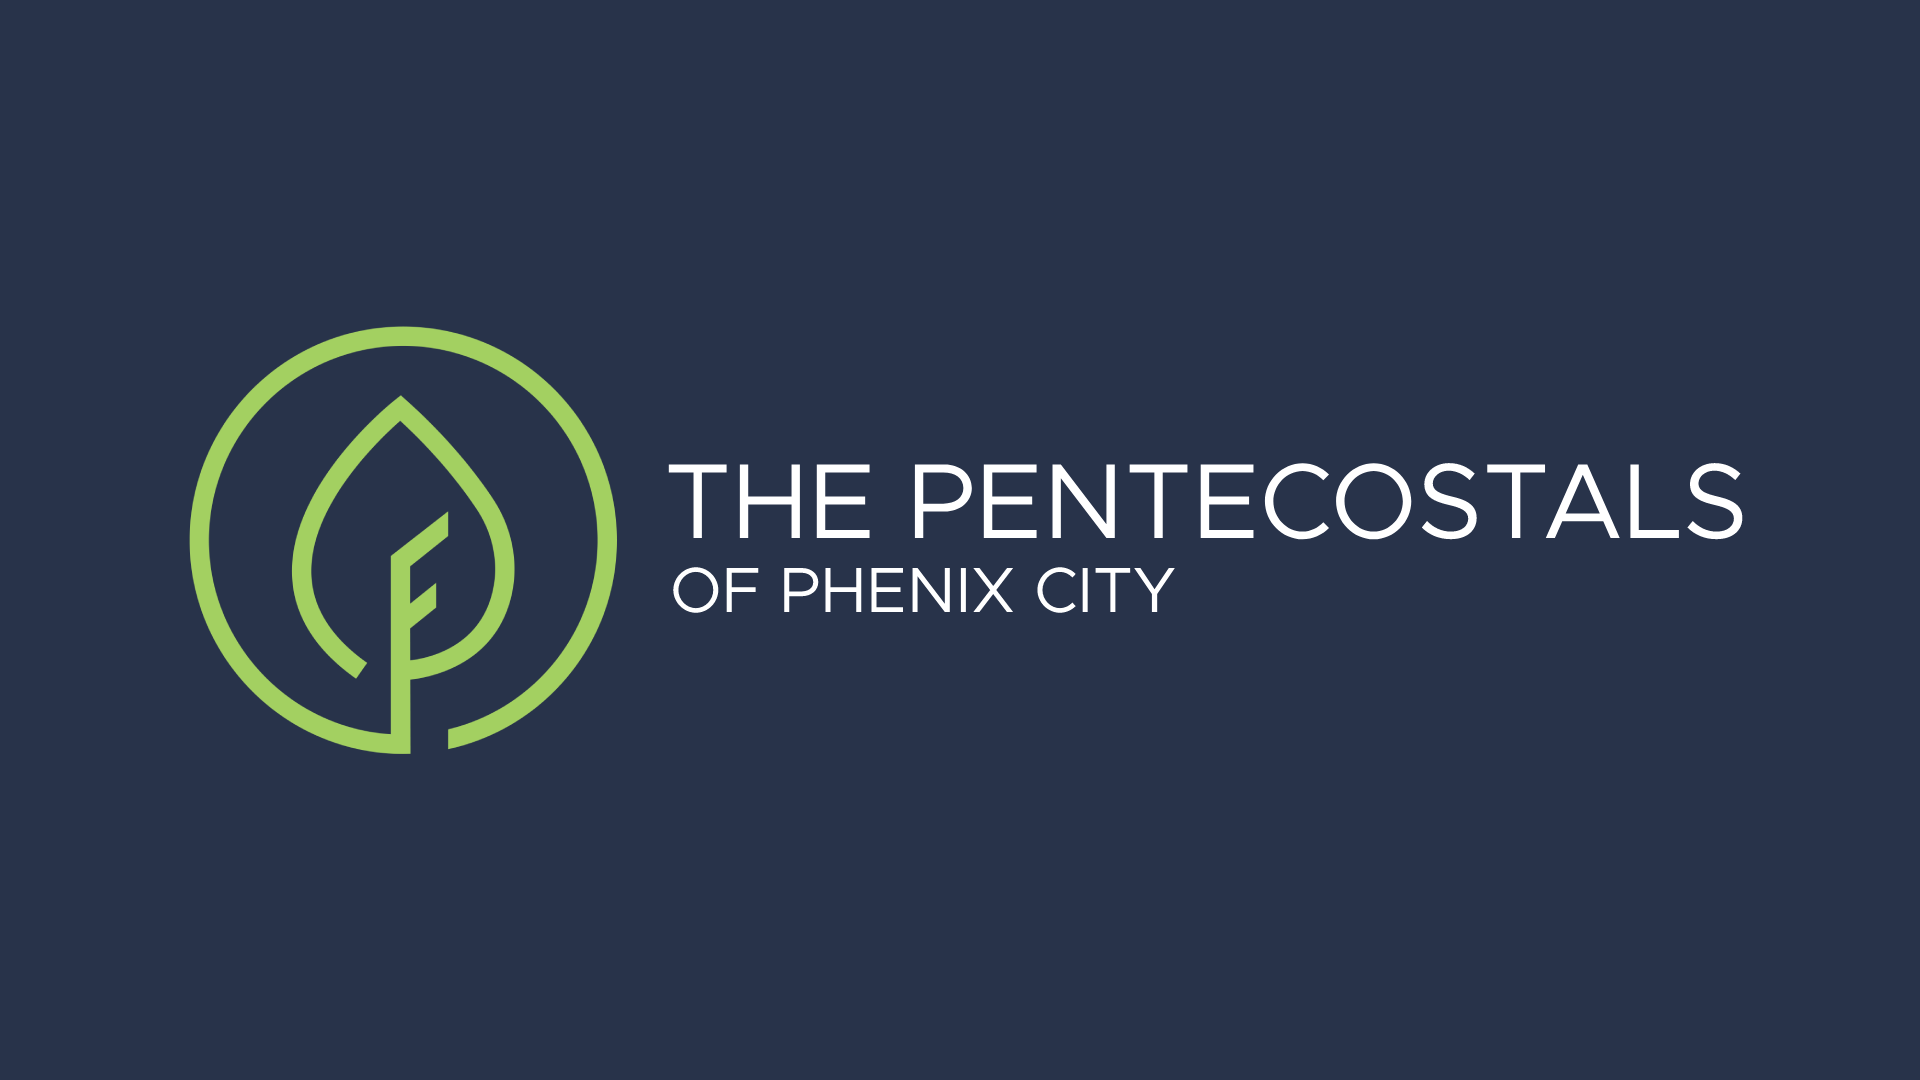 The Pentecostals of Phenix City